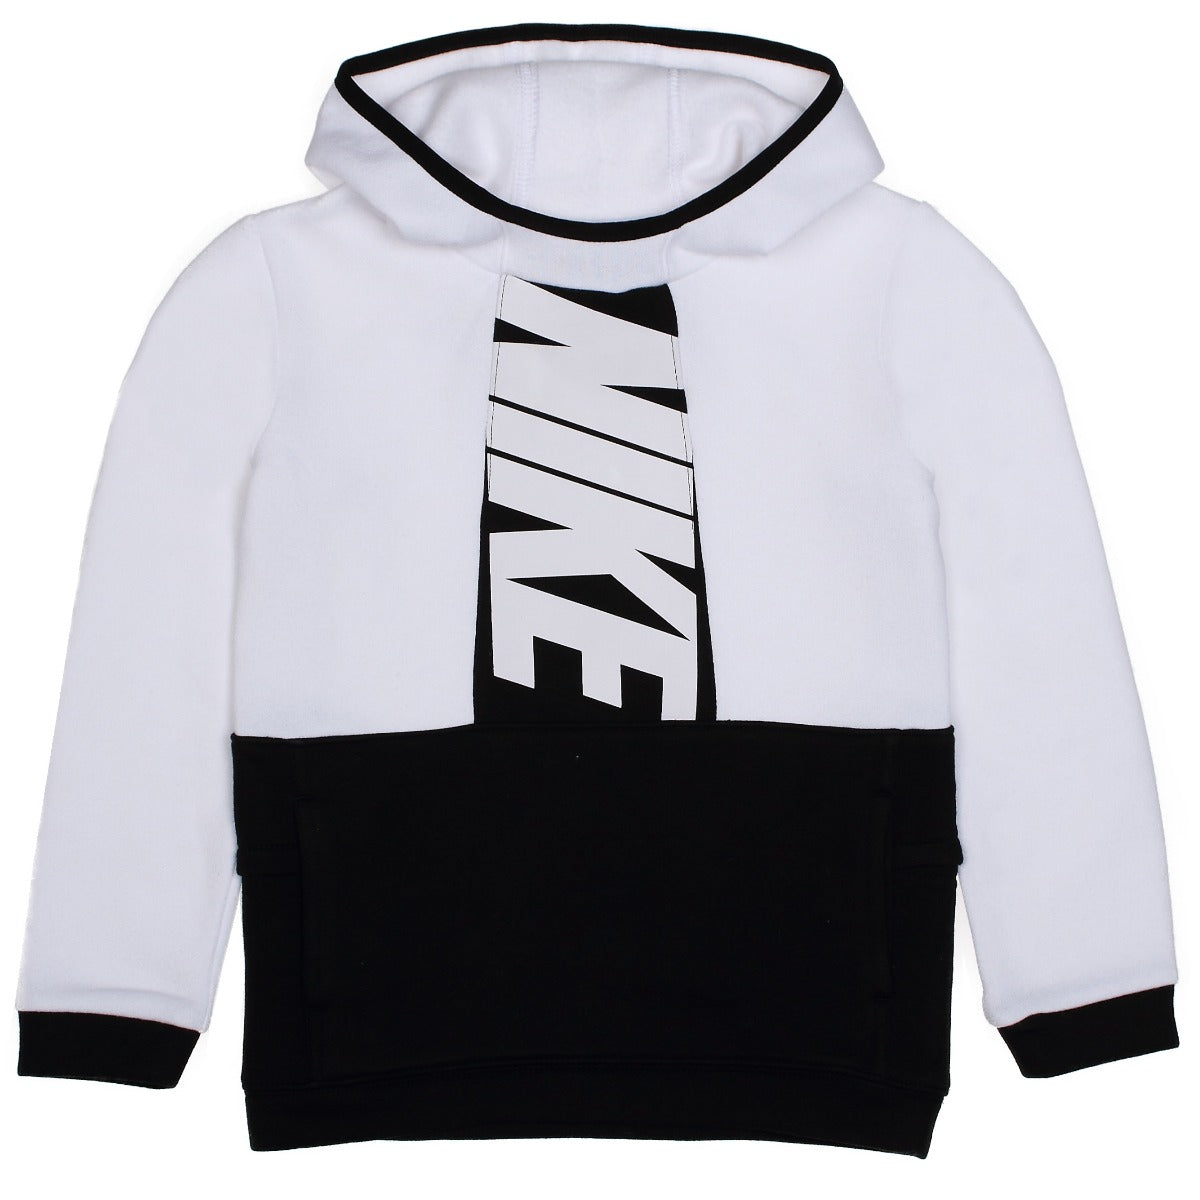 Felpa Nike Sportswear Ampliffy Bambini - Bianco/Nero